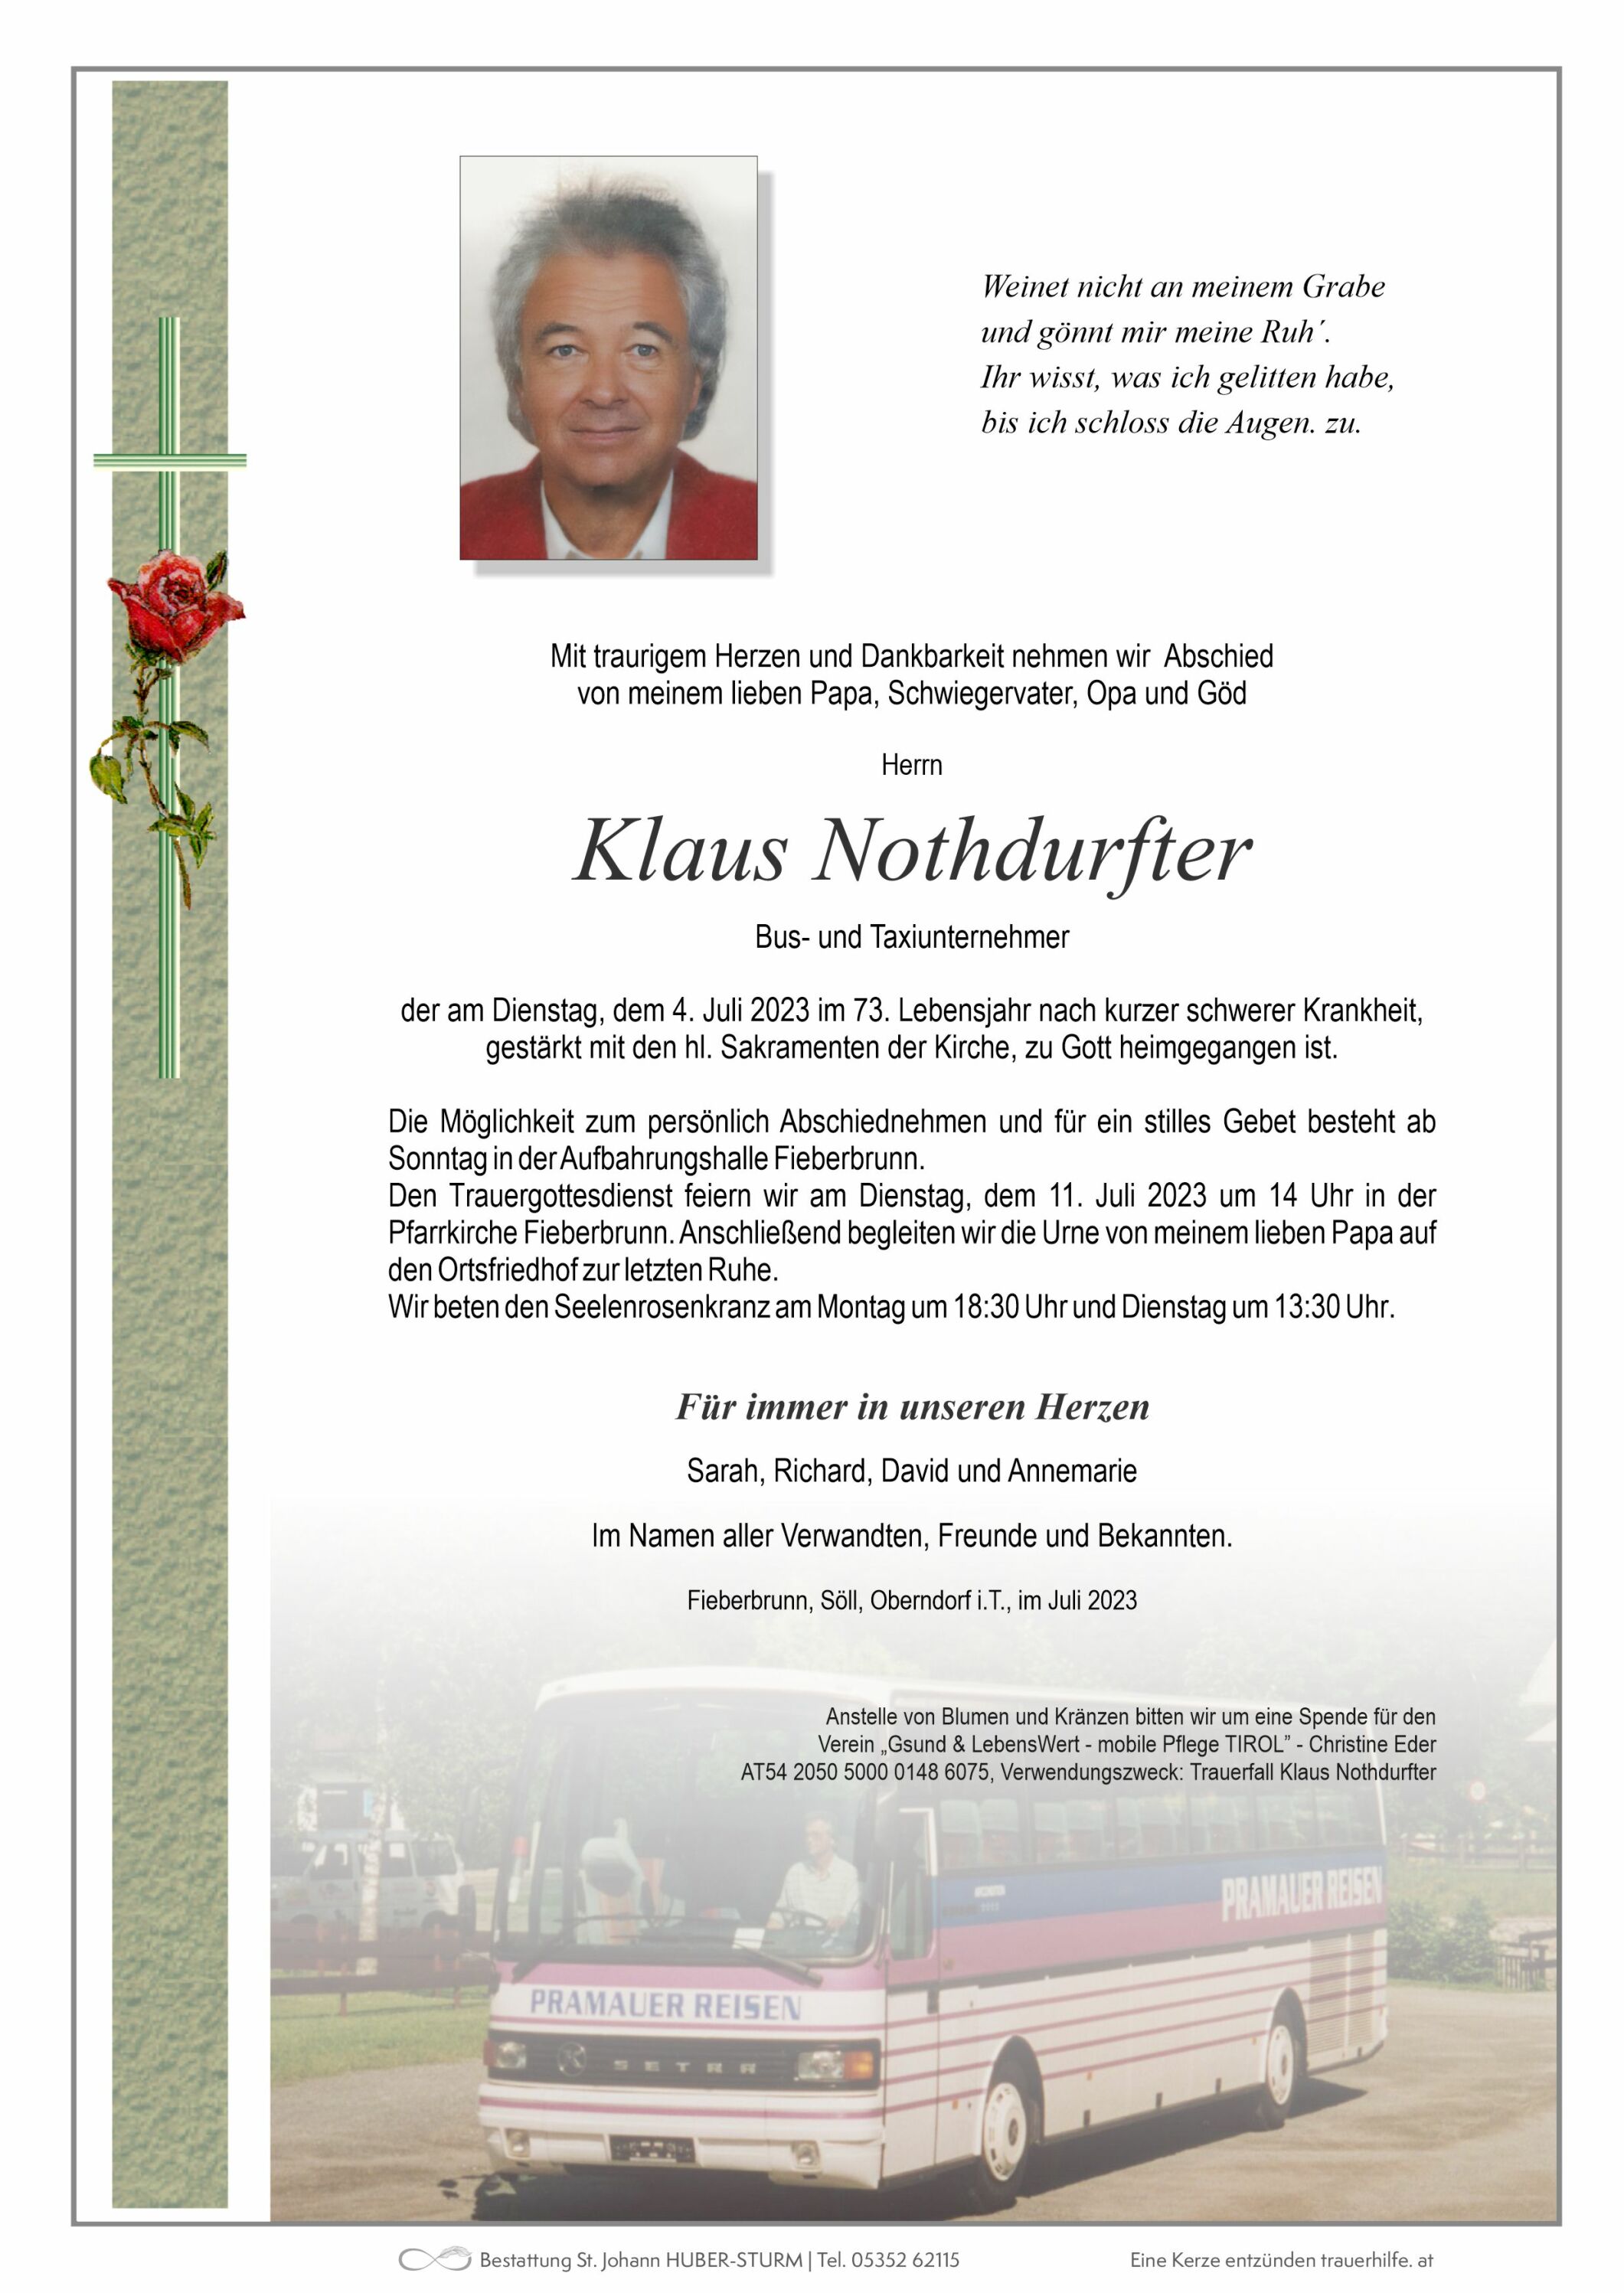 Klaus Nothdurfter